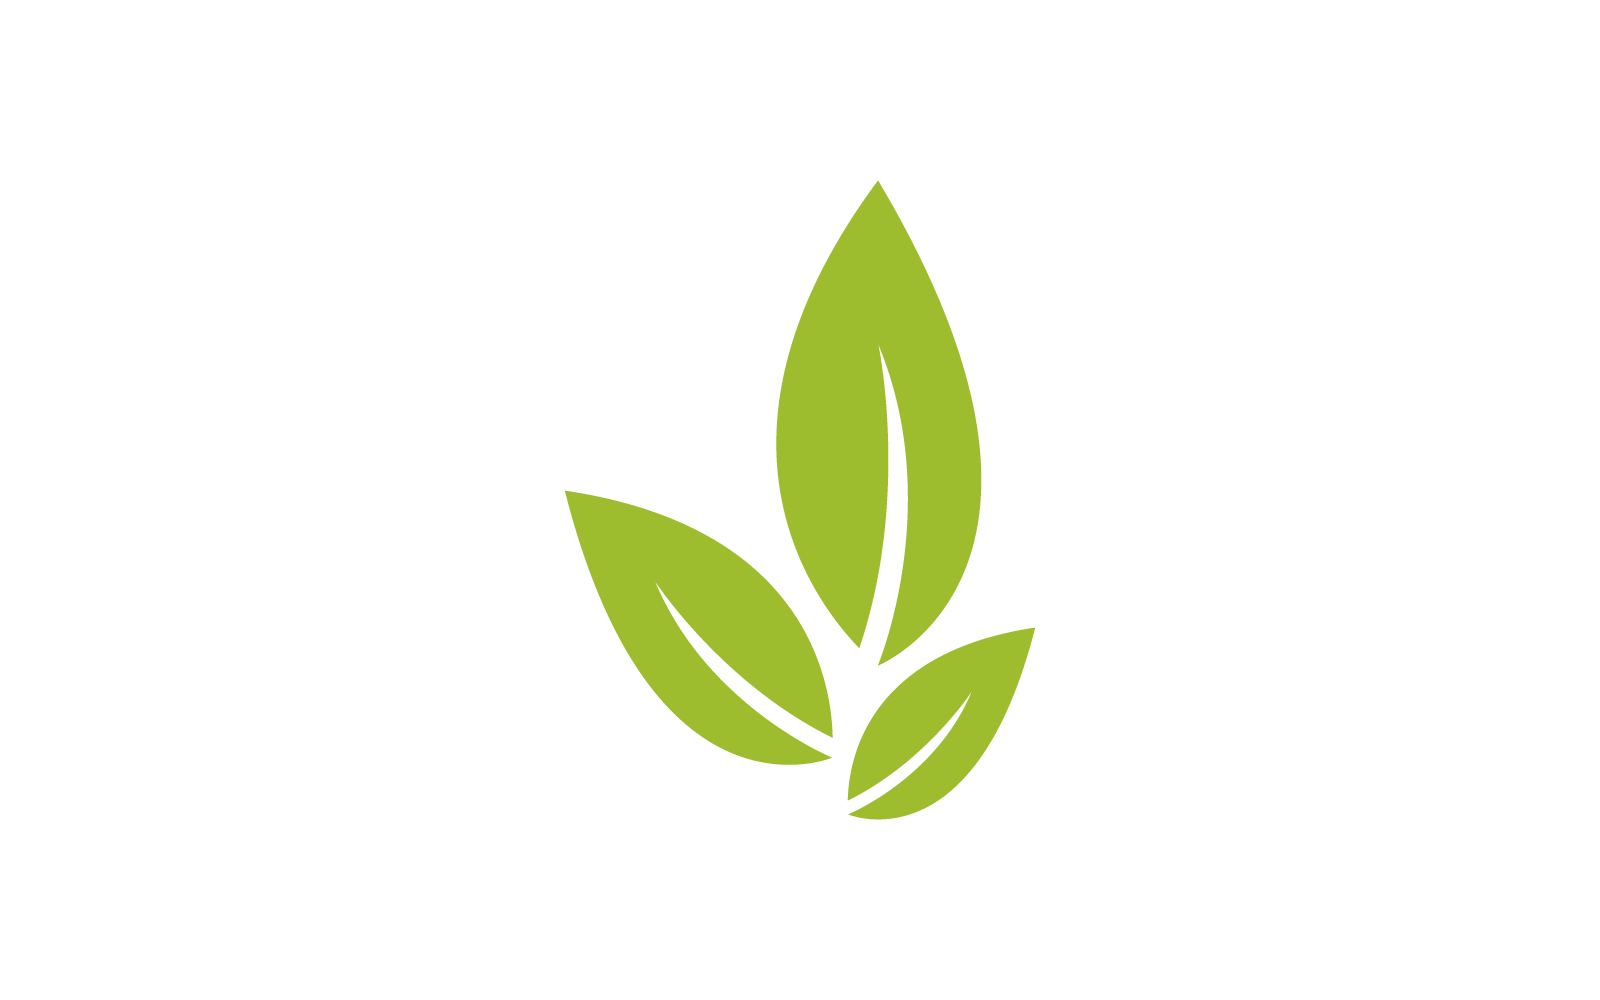 Green leaf illustration nature design Logo Template